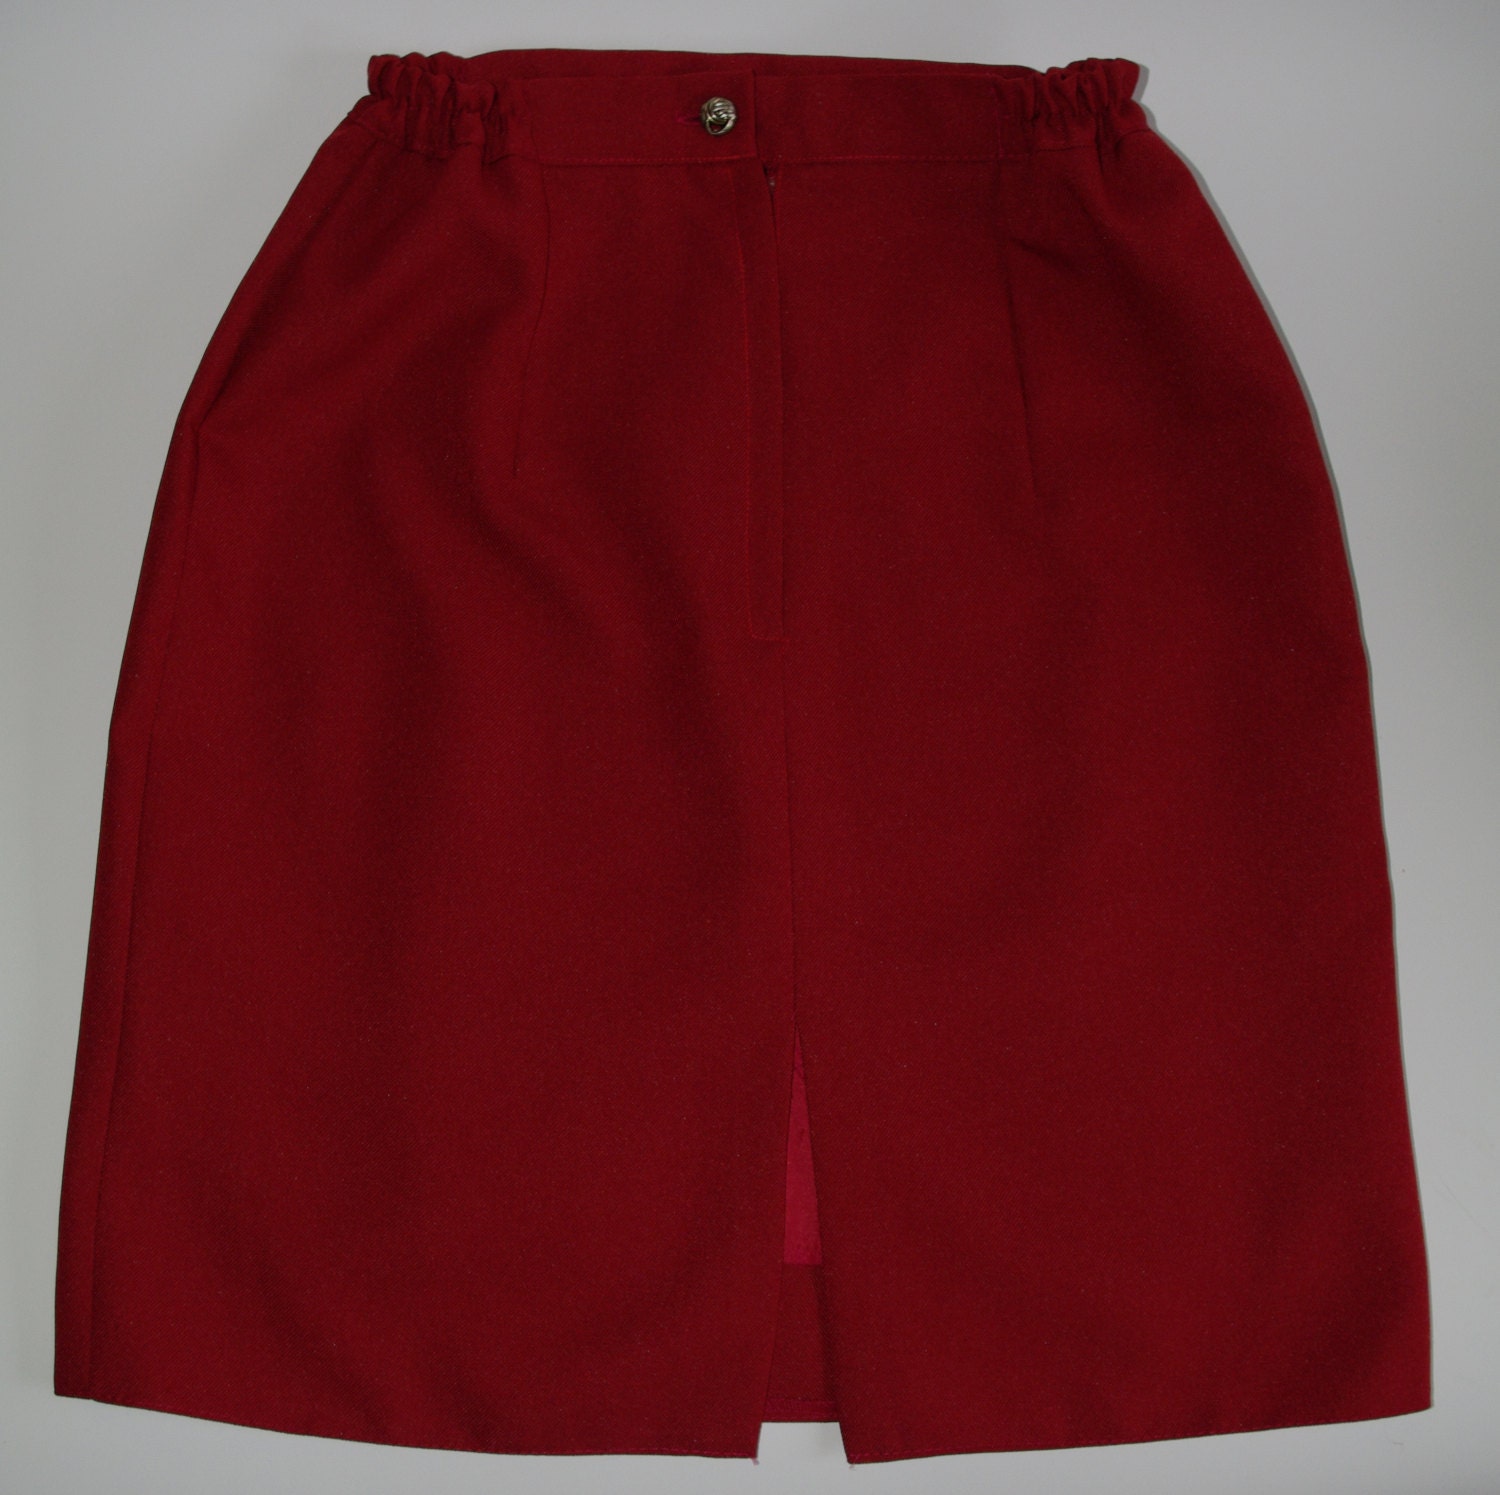 SALE: Vintage Retro Maroon Skirt / Dark red mini skirt